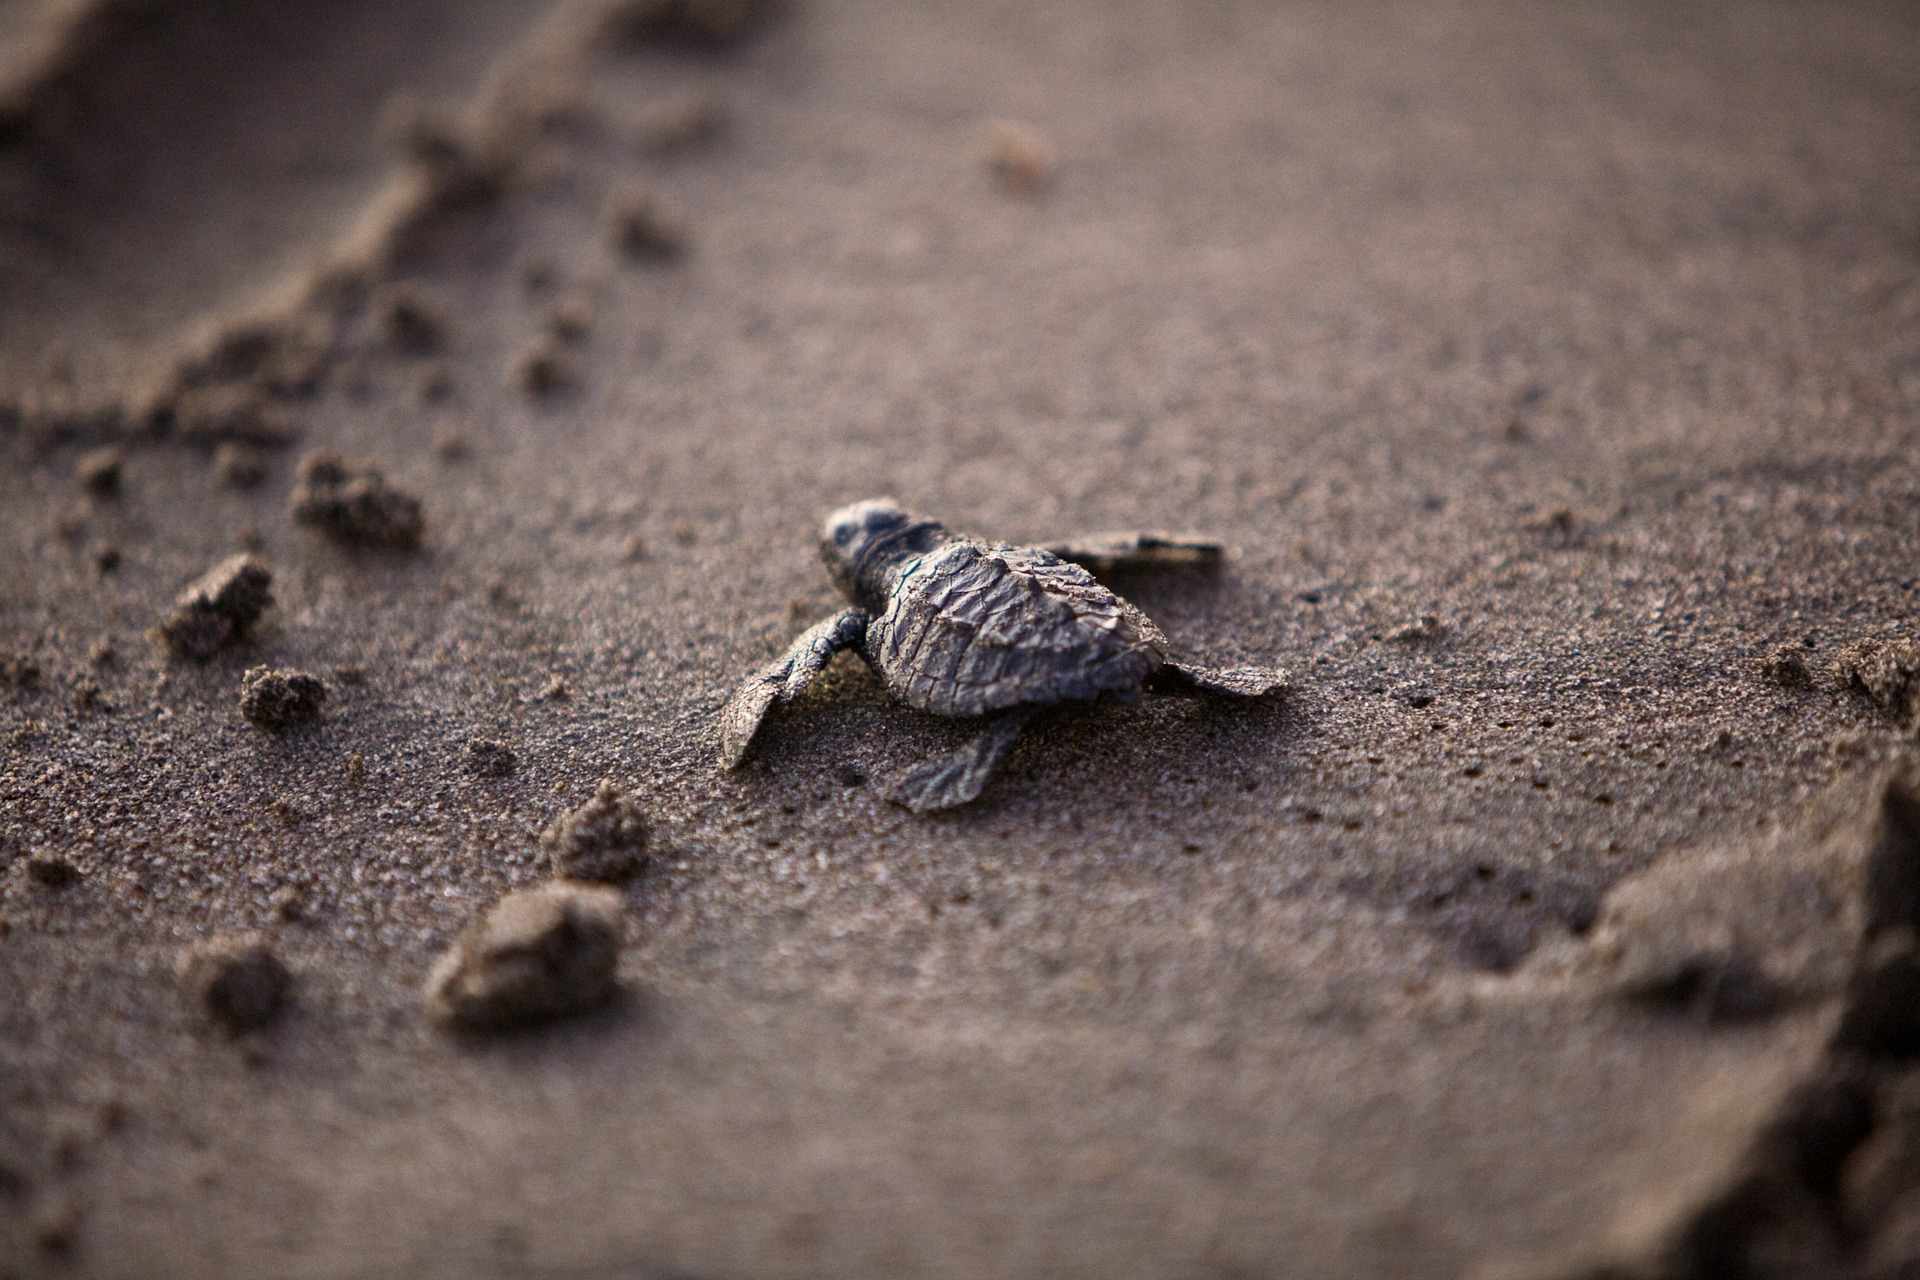 gerade geschlüpfte unechte karettschildkröte auf dem Sand